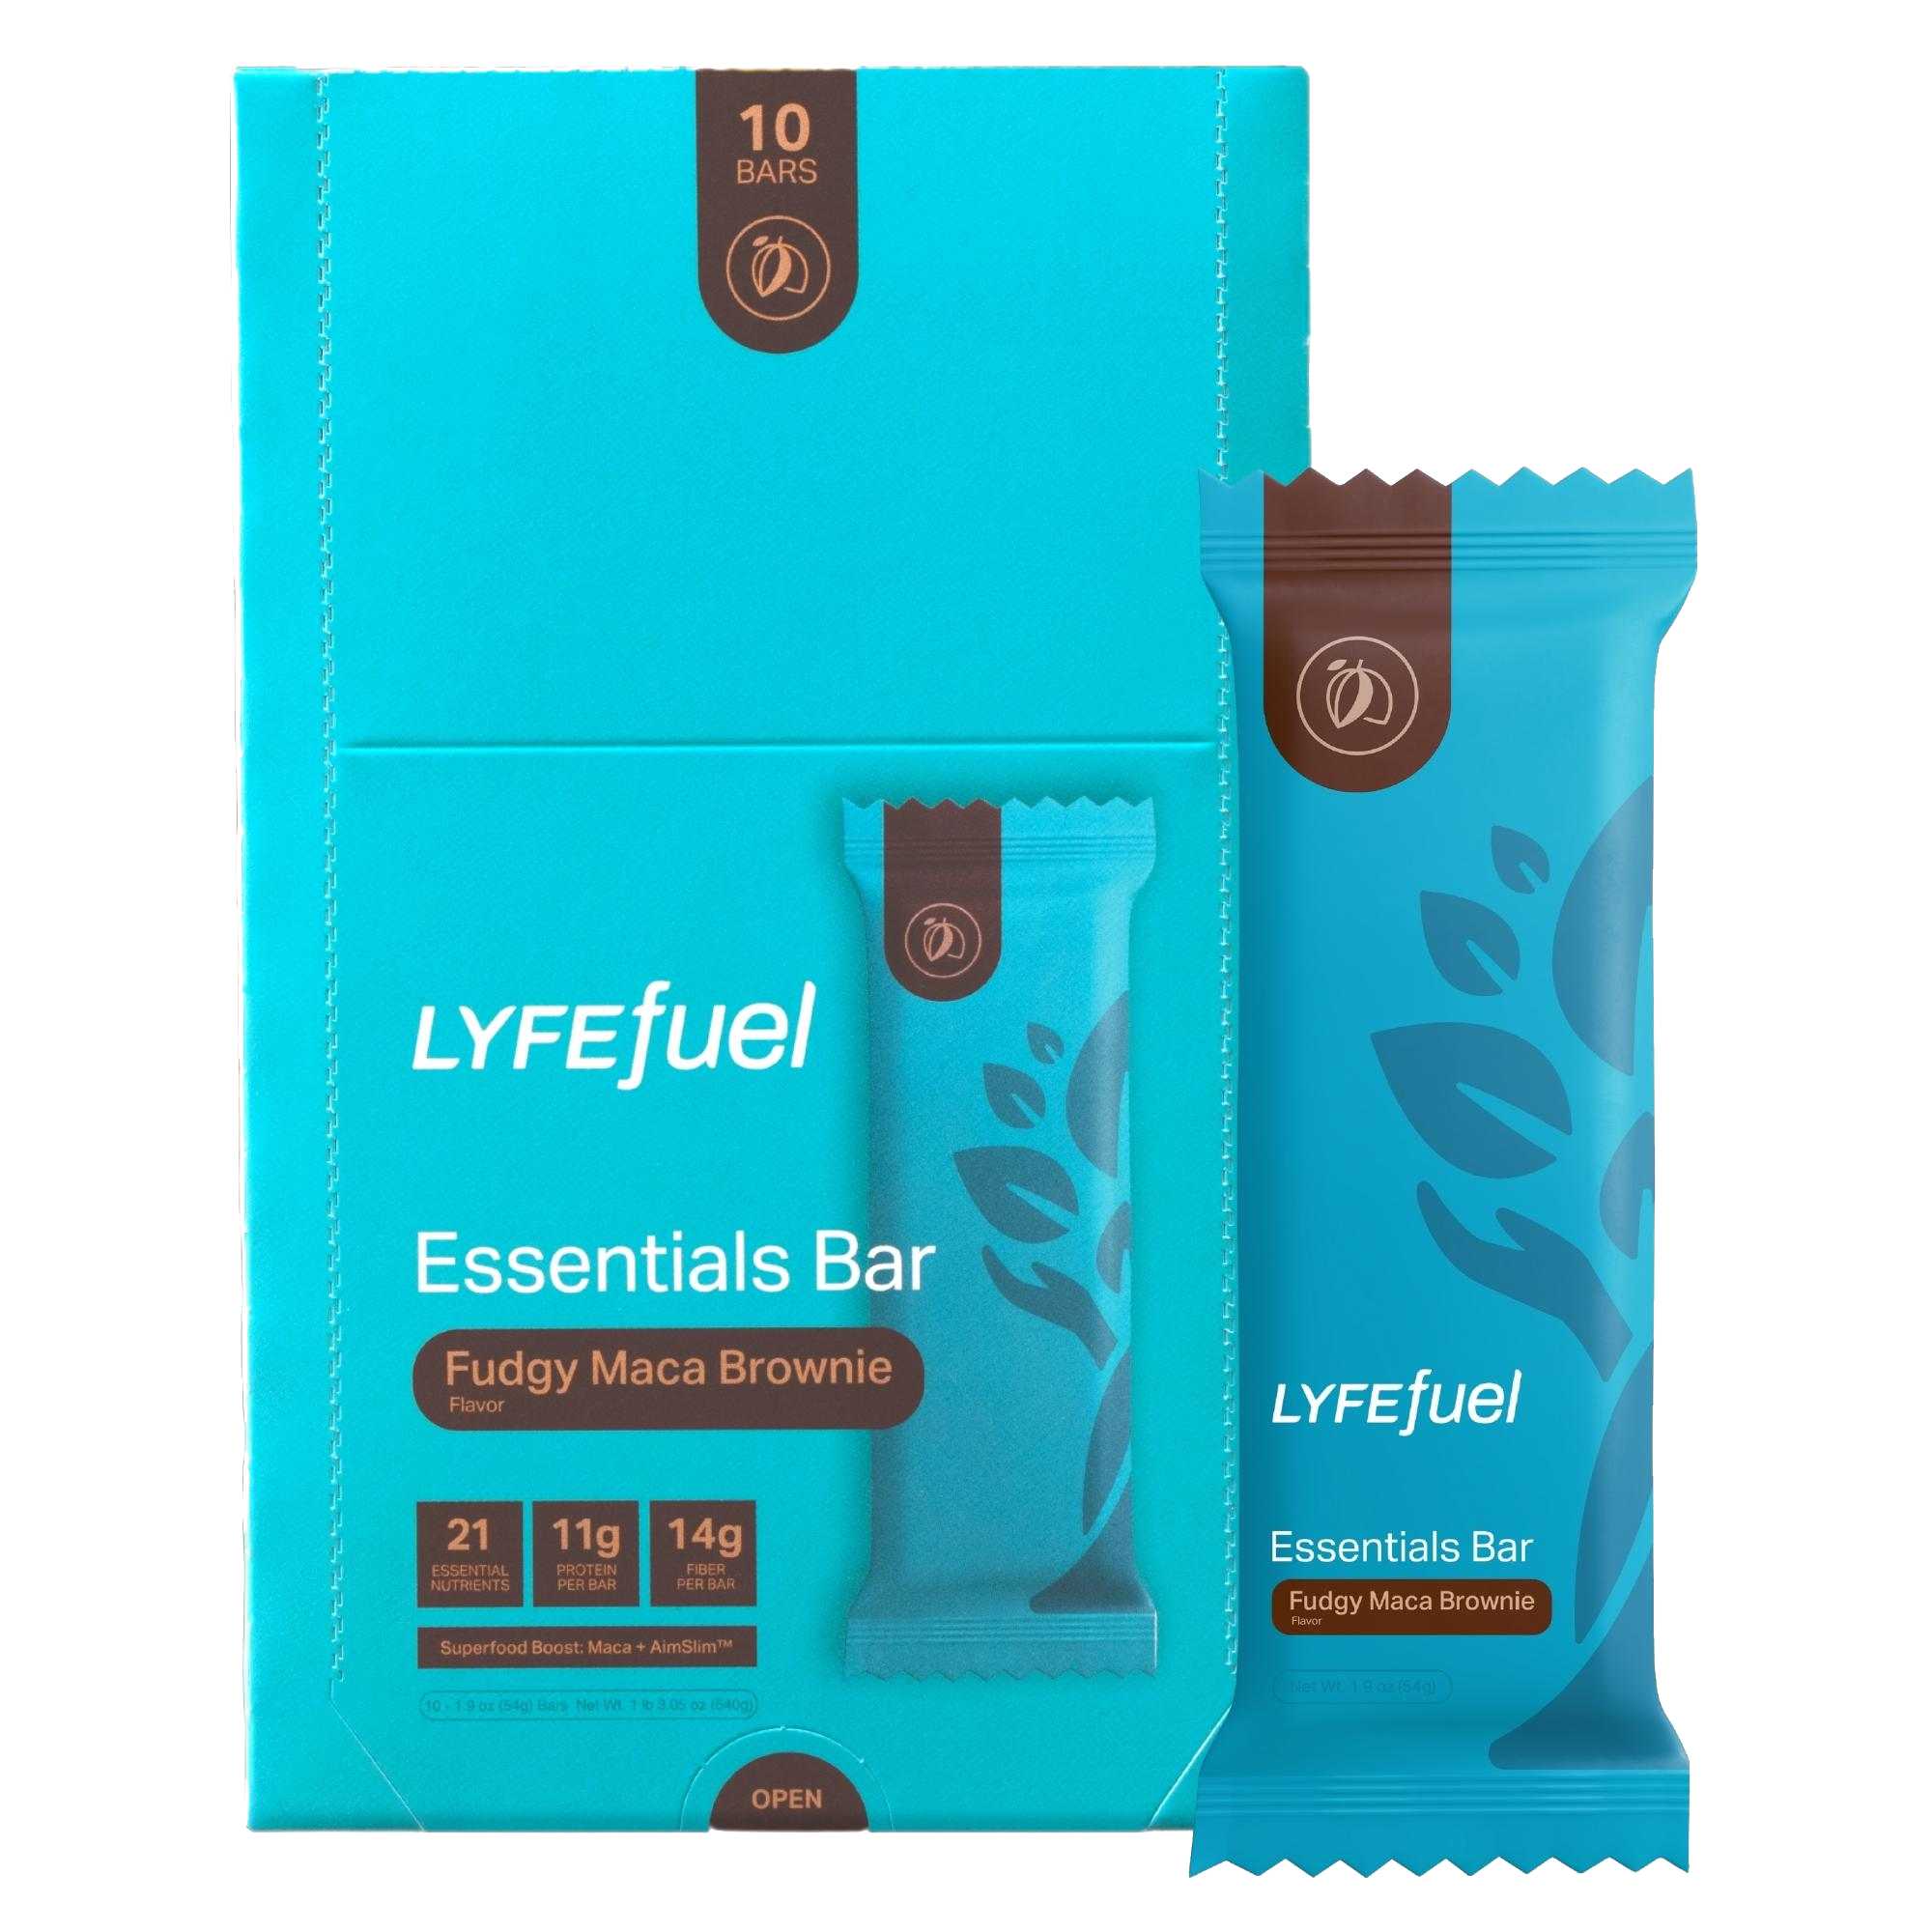 Essentials Bar (Fudgy Maca Brownie) by LyfeFuel